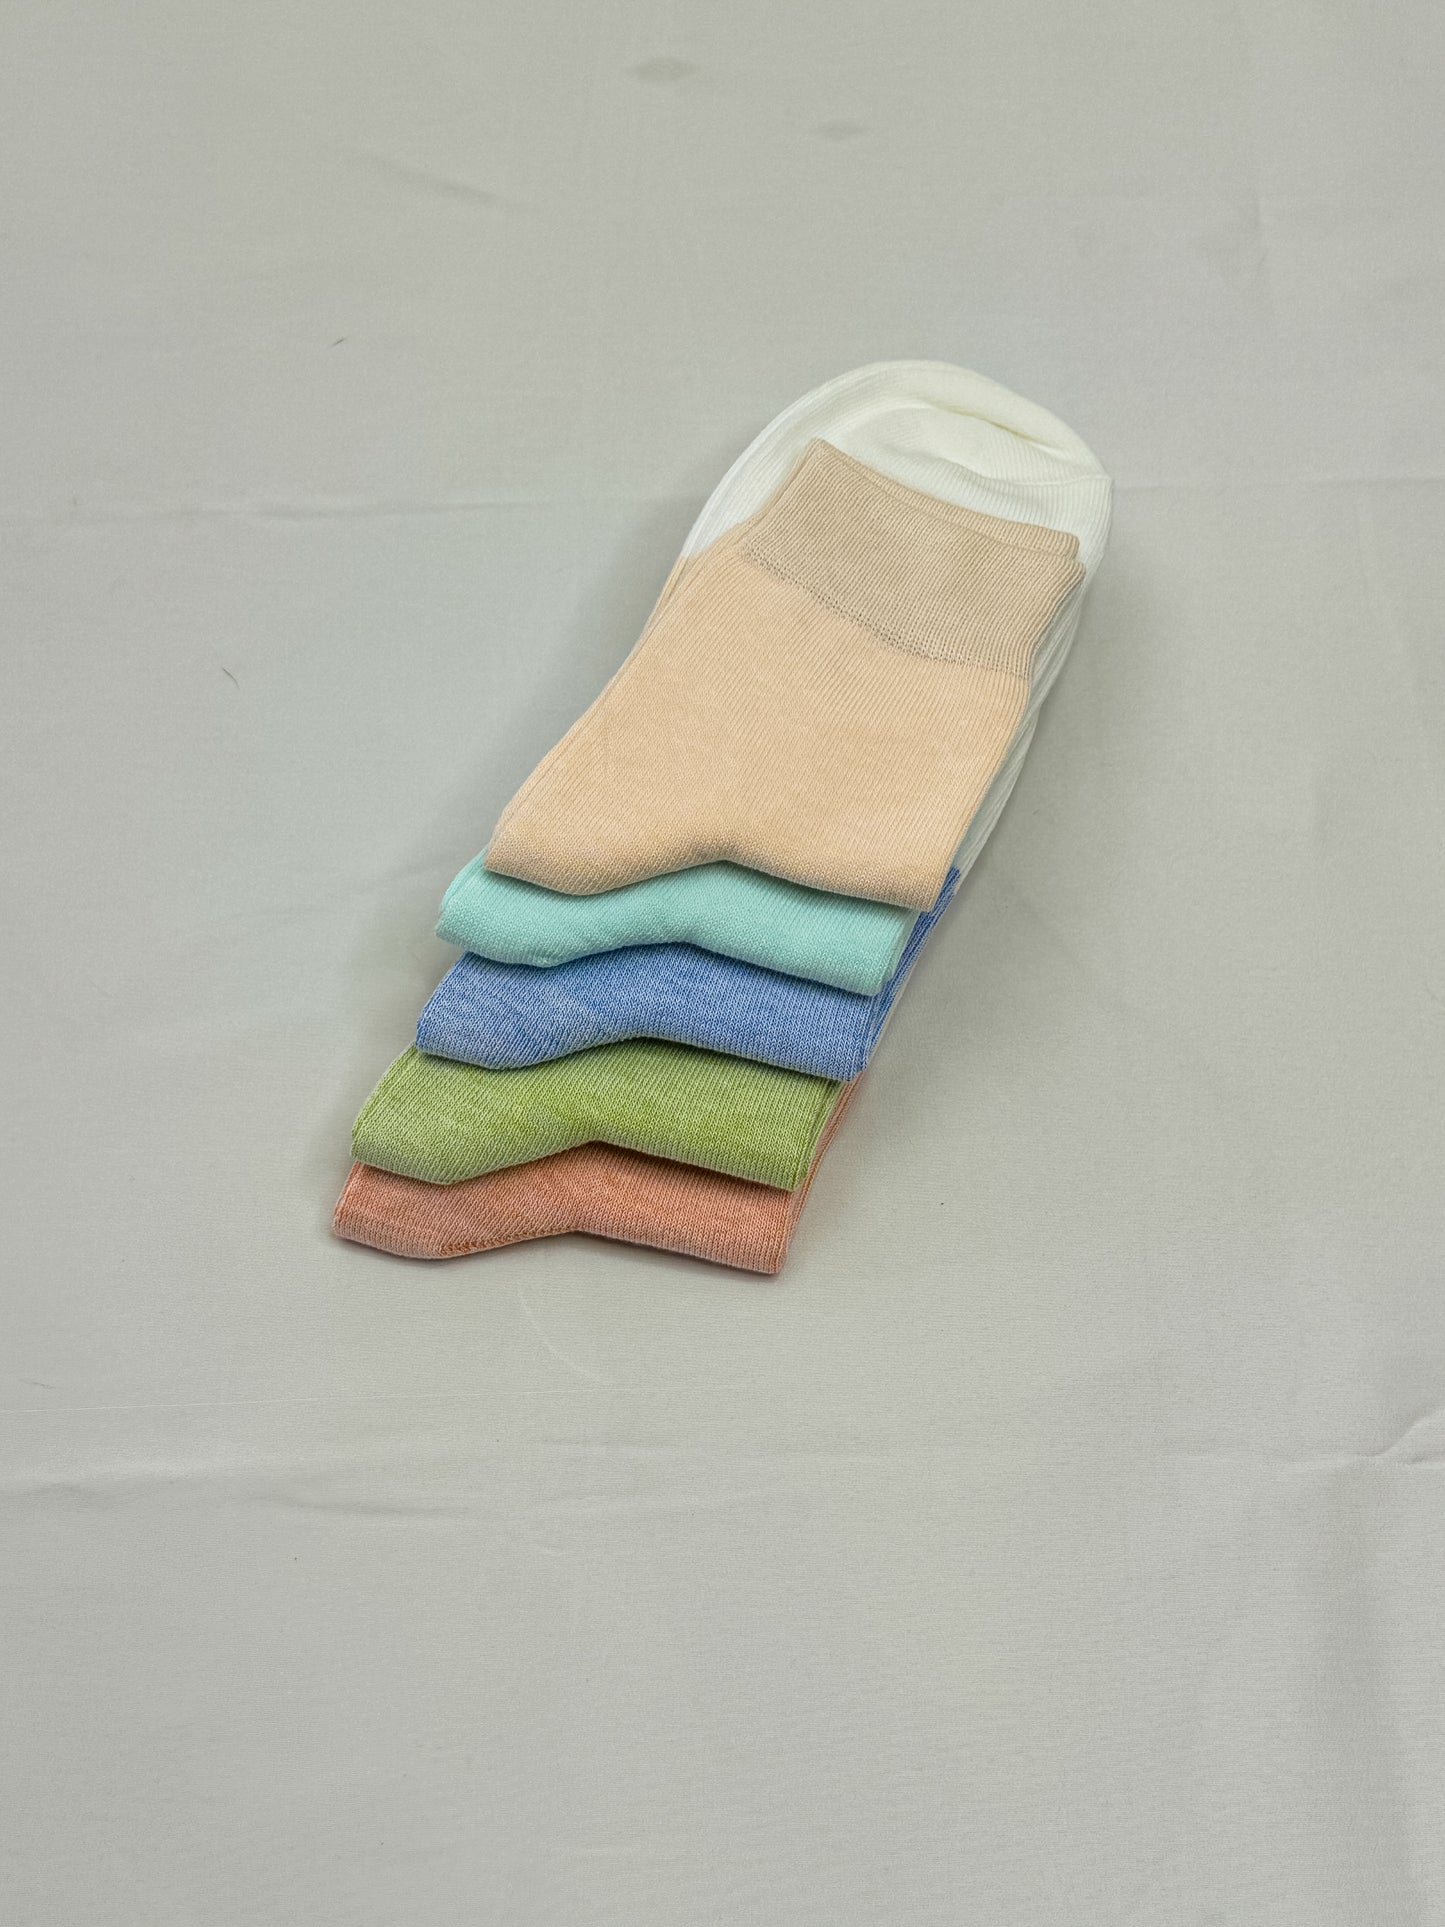 Pill socks for women - Summer socks 5 pairs/pack - Size 4 - 7 UK shoe size